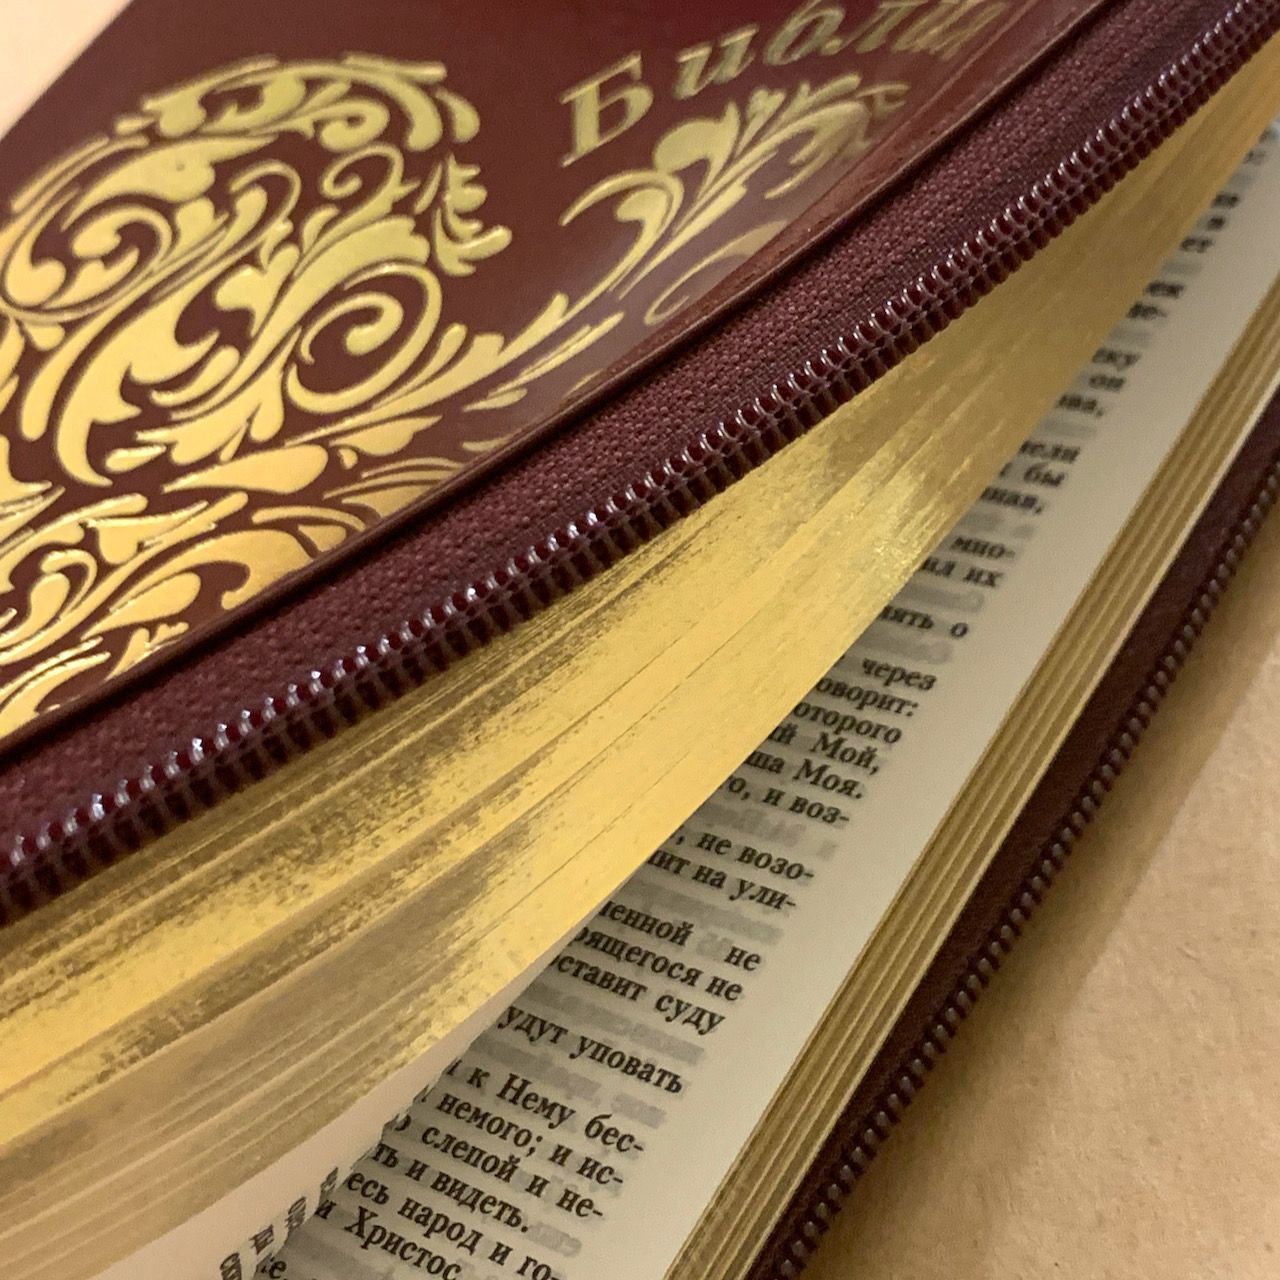 Библия 055z код I4 7118 переплет из натуральной кожи на молнии, цвет бордо, дизайн золотое сердце, средний формат, 143*220 мм, паралельные места по центру страницы, золотой обрез, крупный шрифт